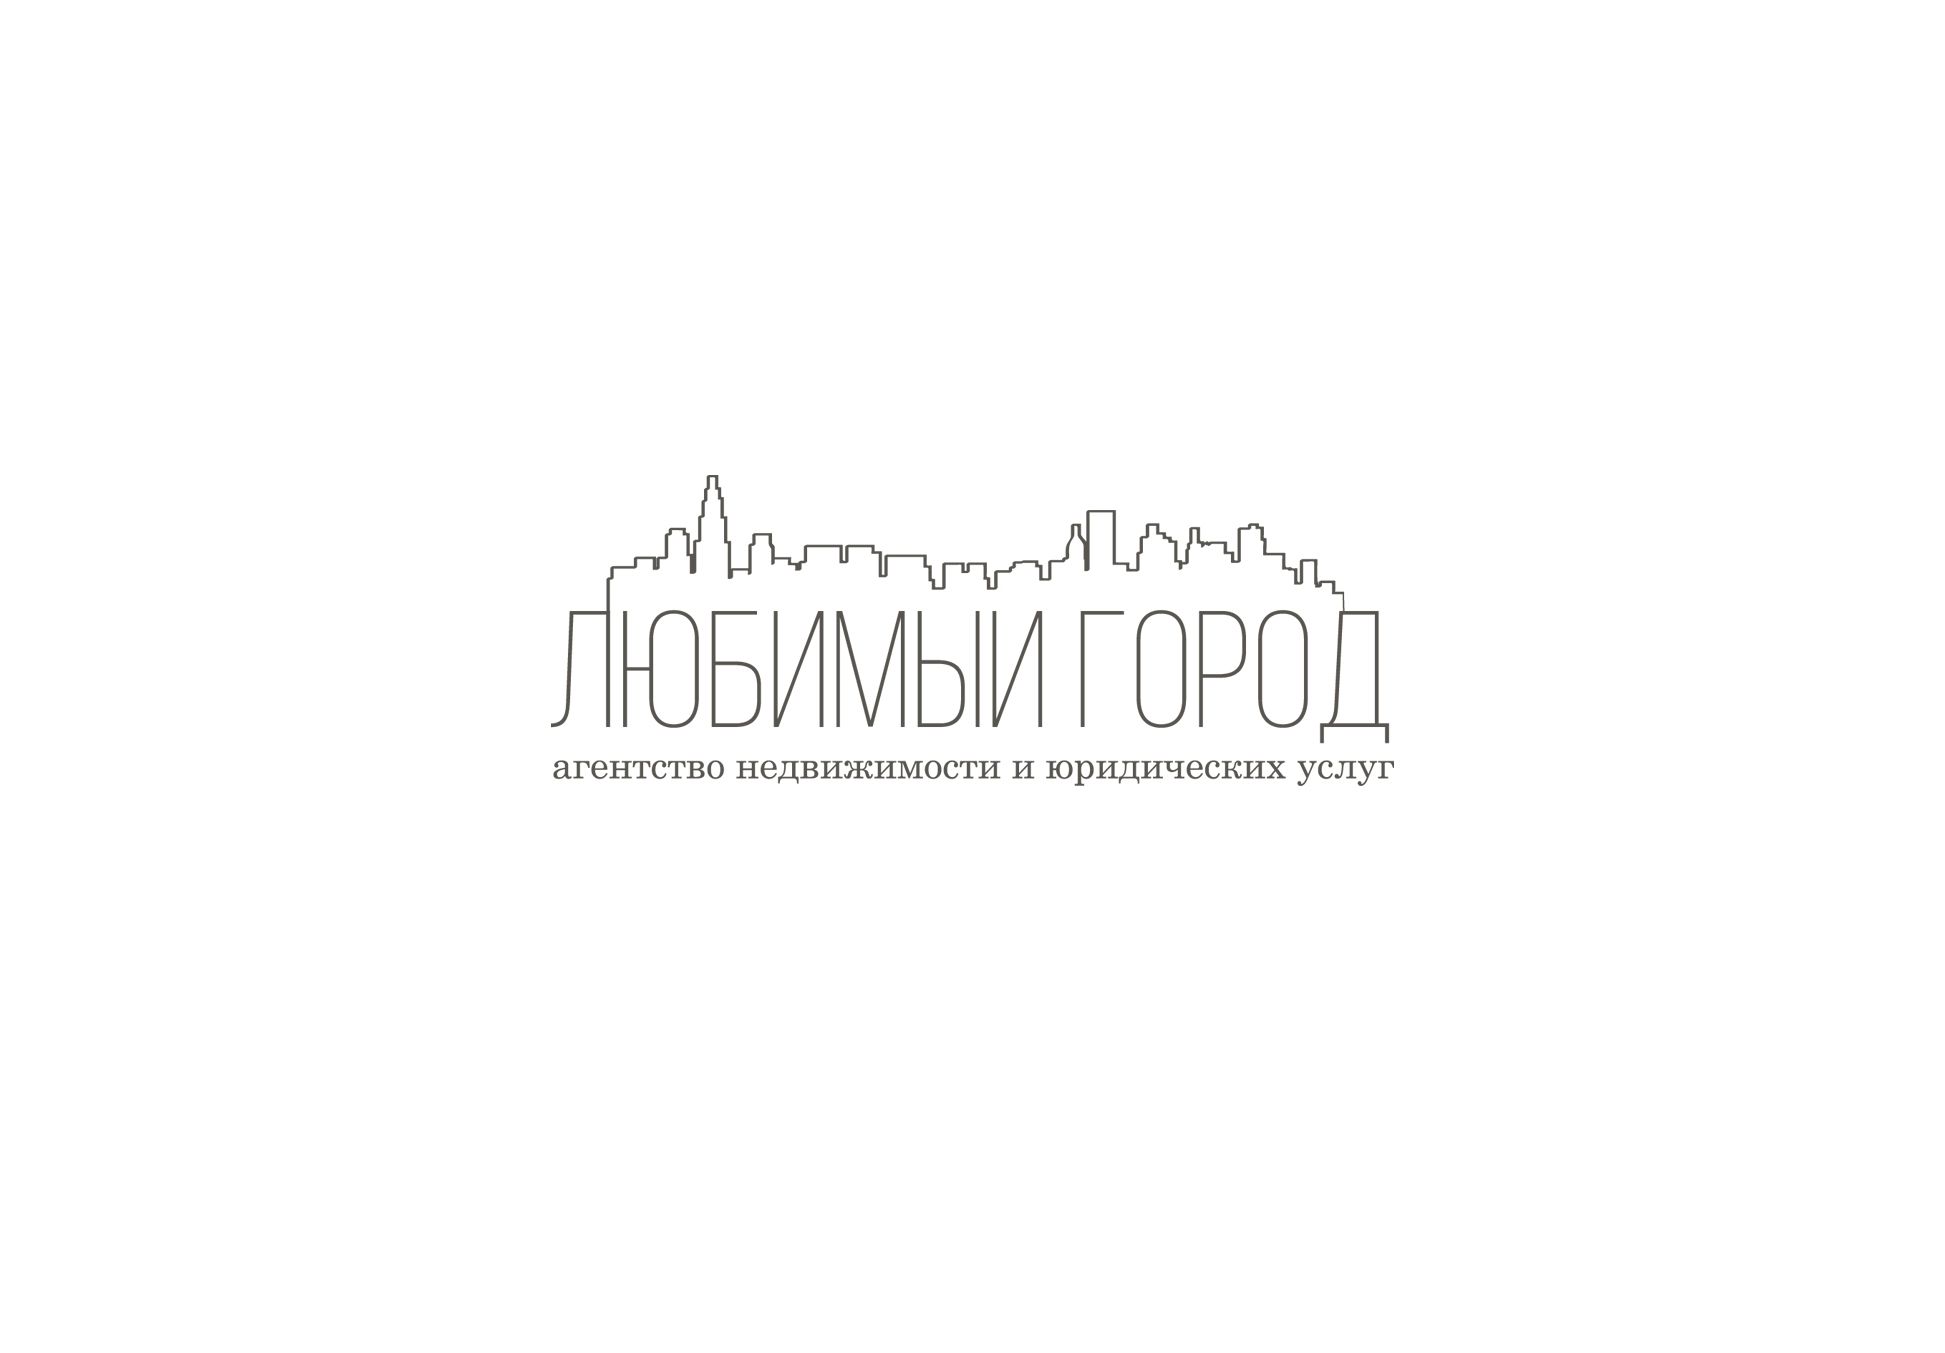 Лого для агентства недвиж и юридических услуг - дизайнер comicdm